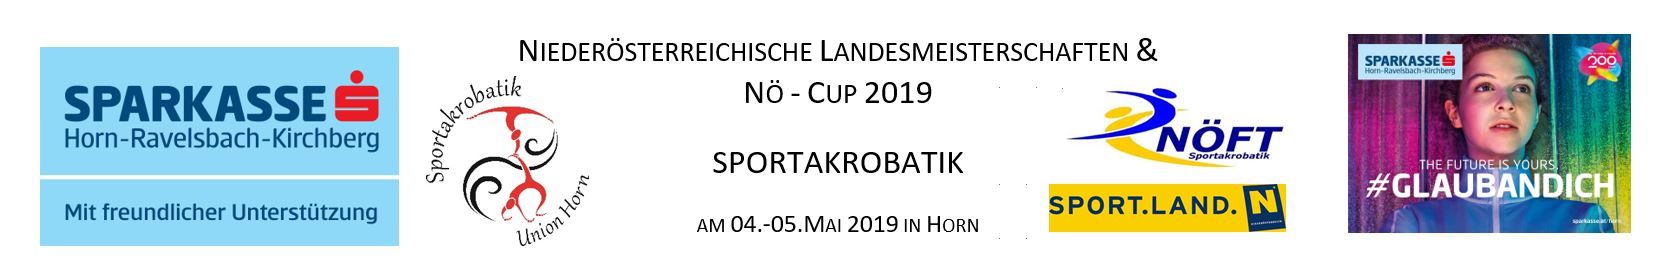 Niederösterreichische Landesmeisterschaften Sportakrobatik